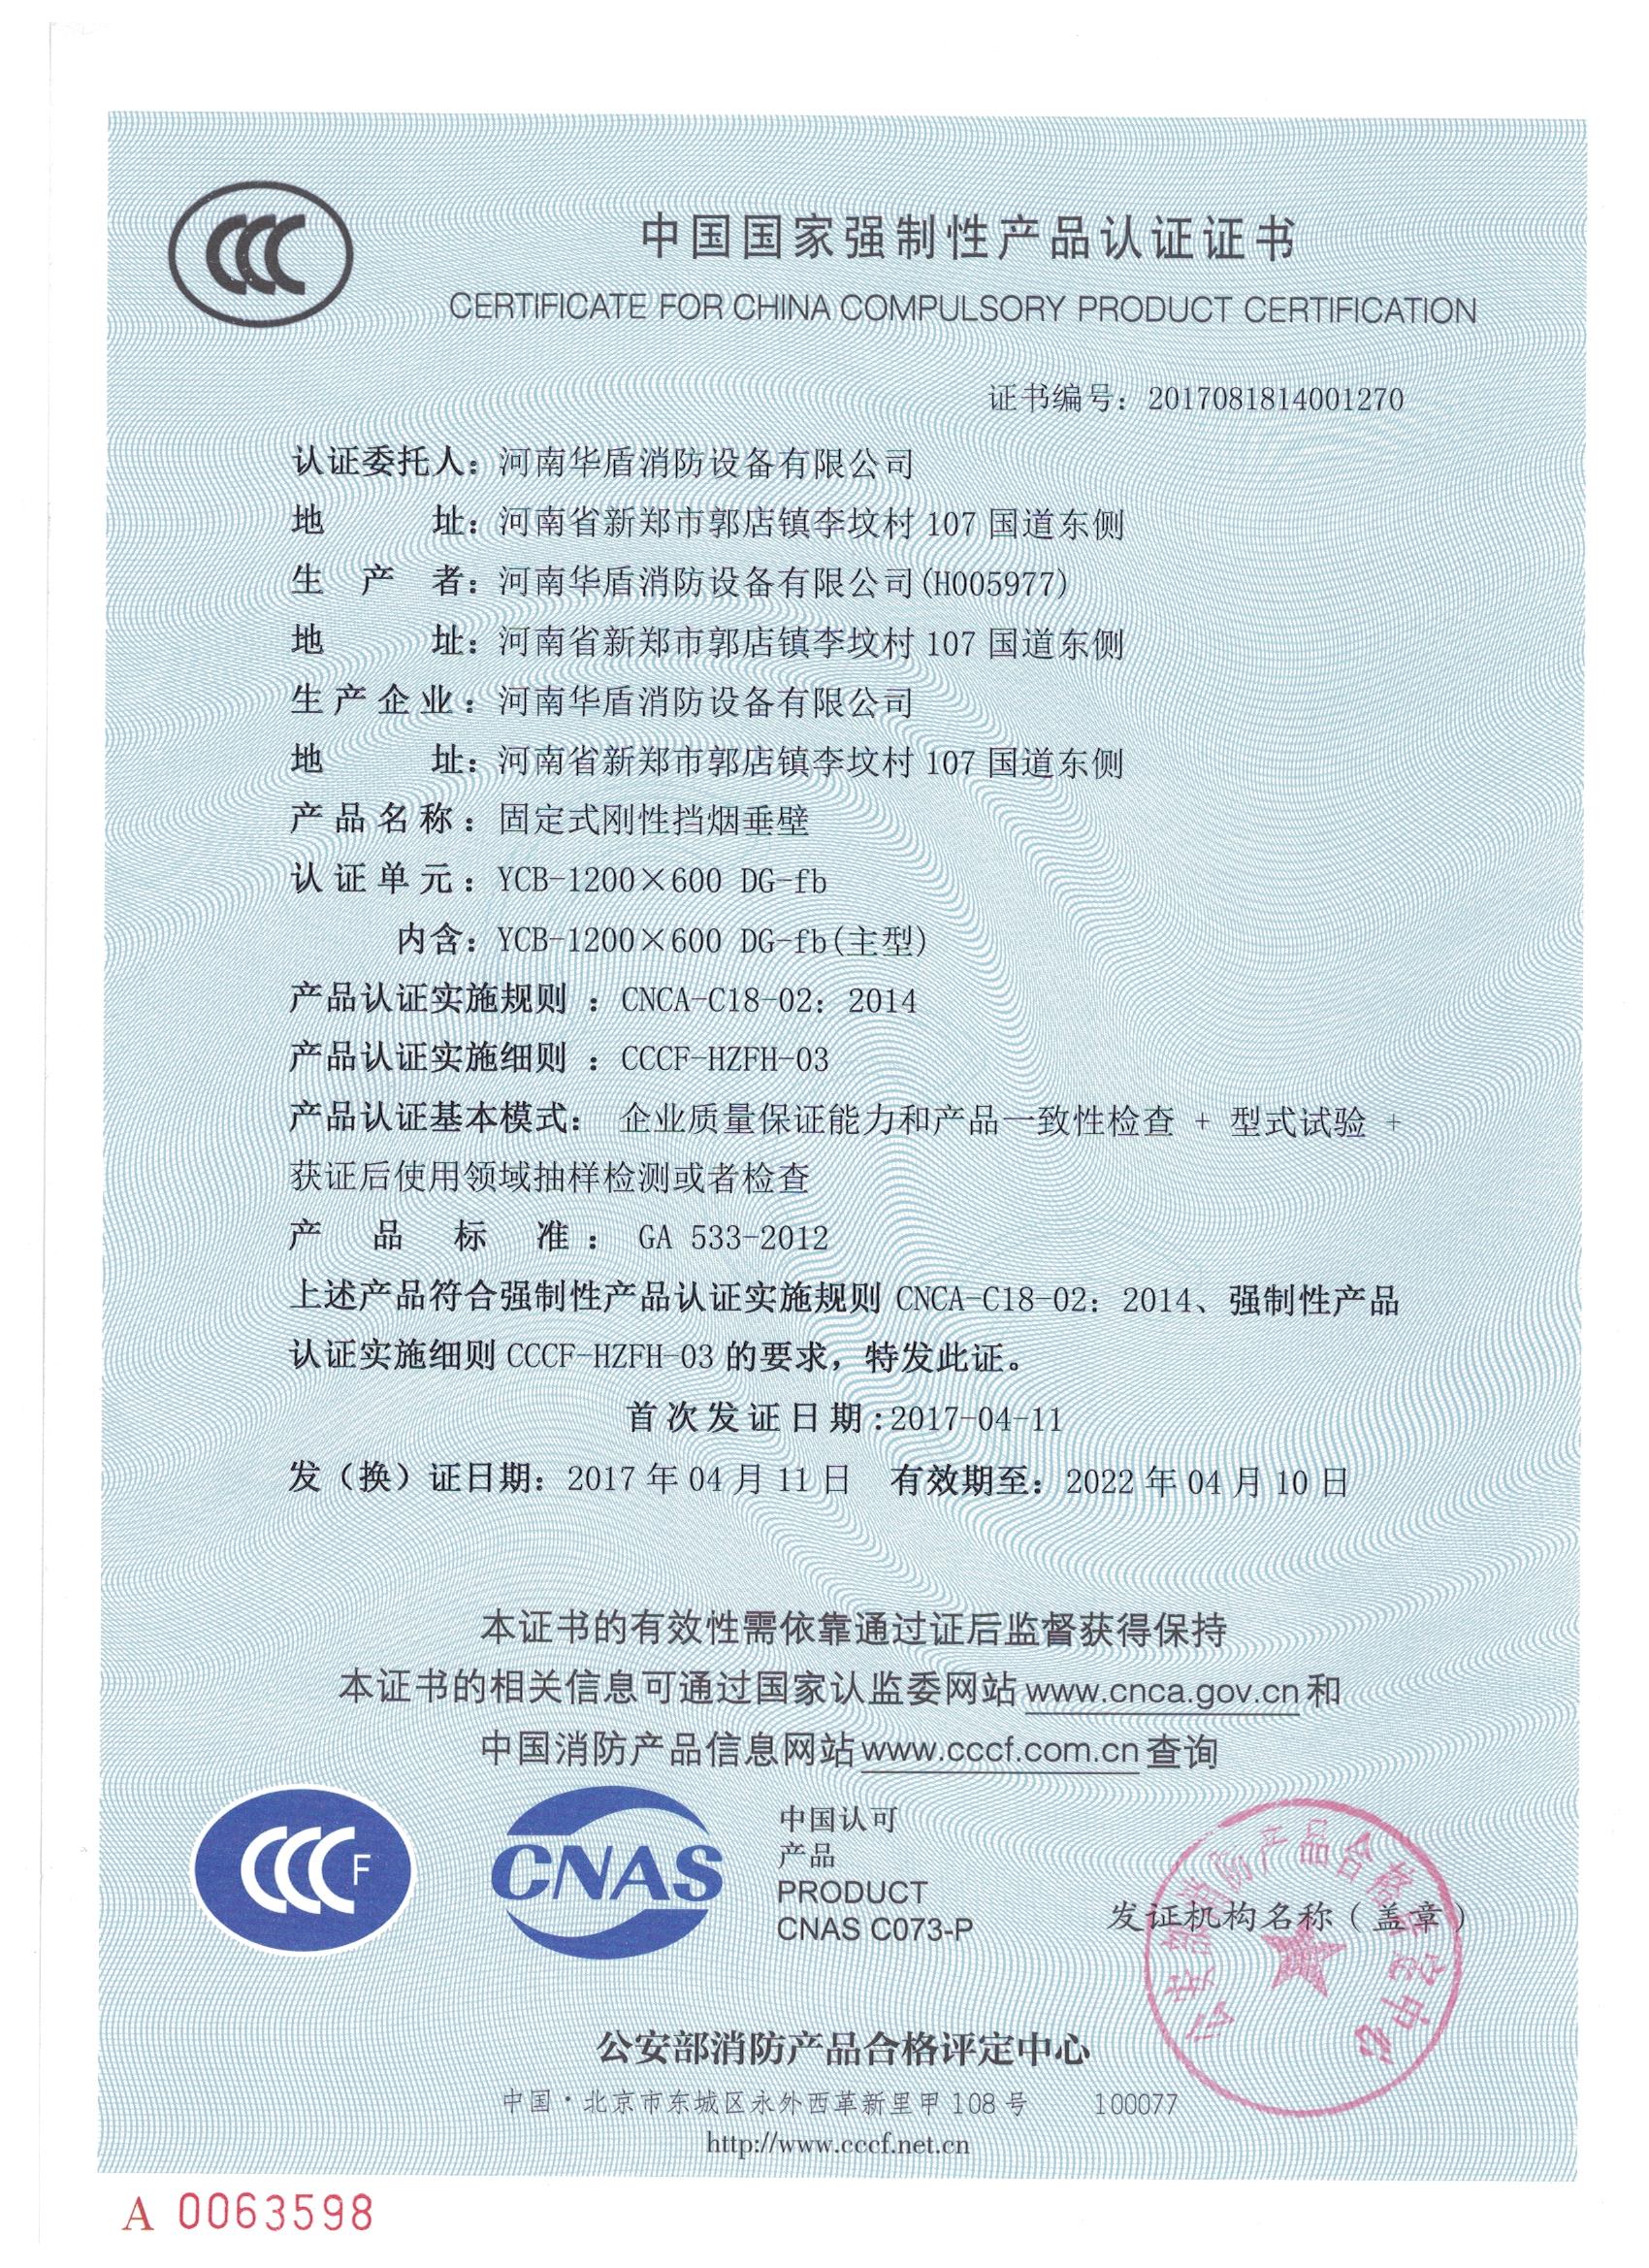 南阳YCB-1000X600 DG-fd-3C证书/检验报告